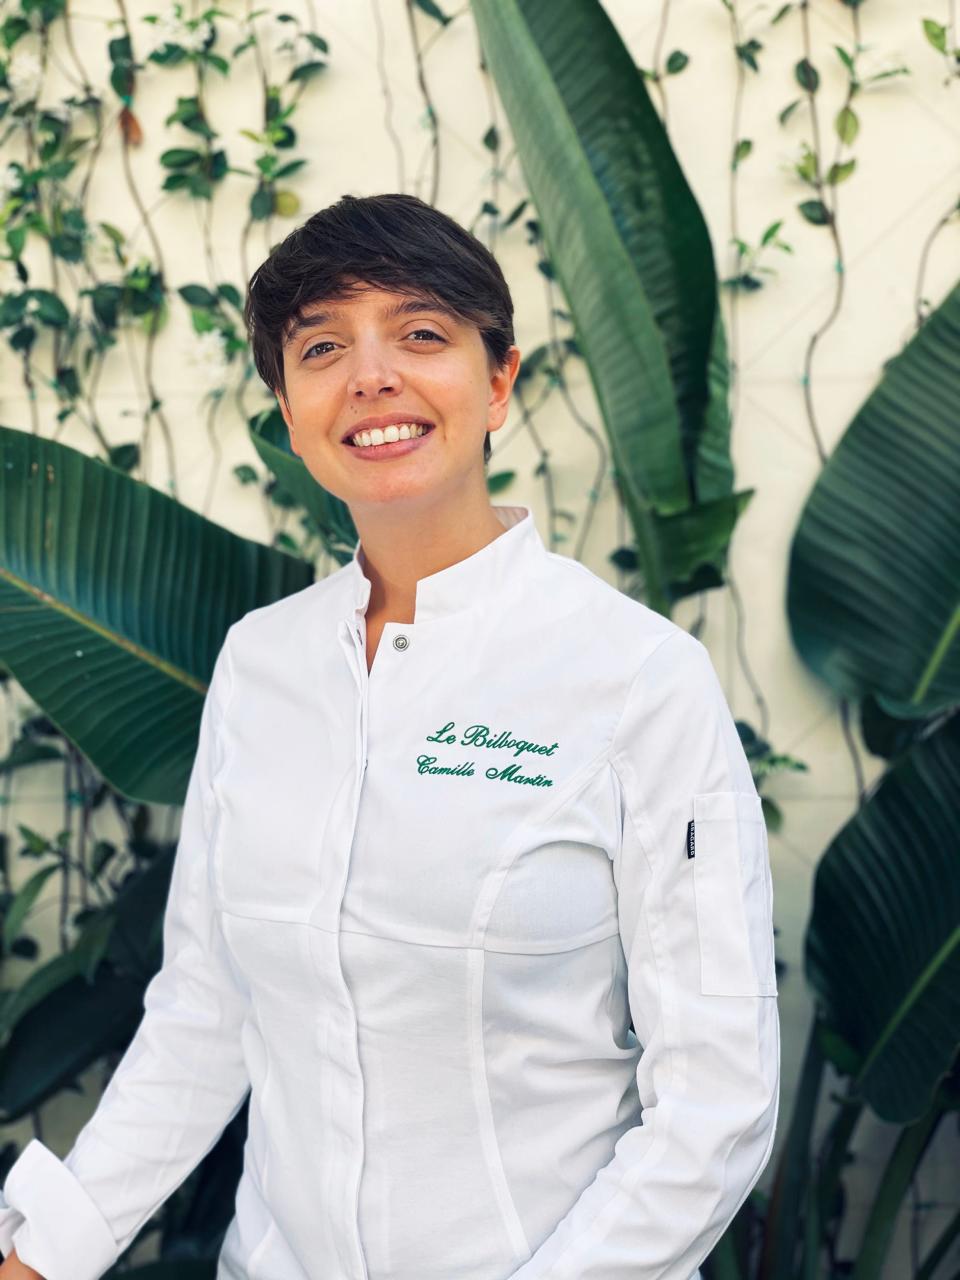 Le Bilboquet Group’s executive chef Camille Martin